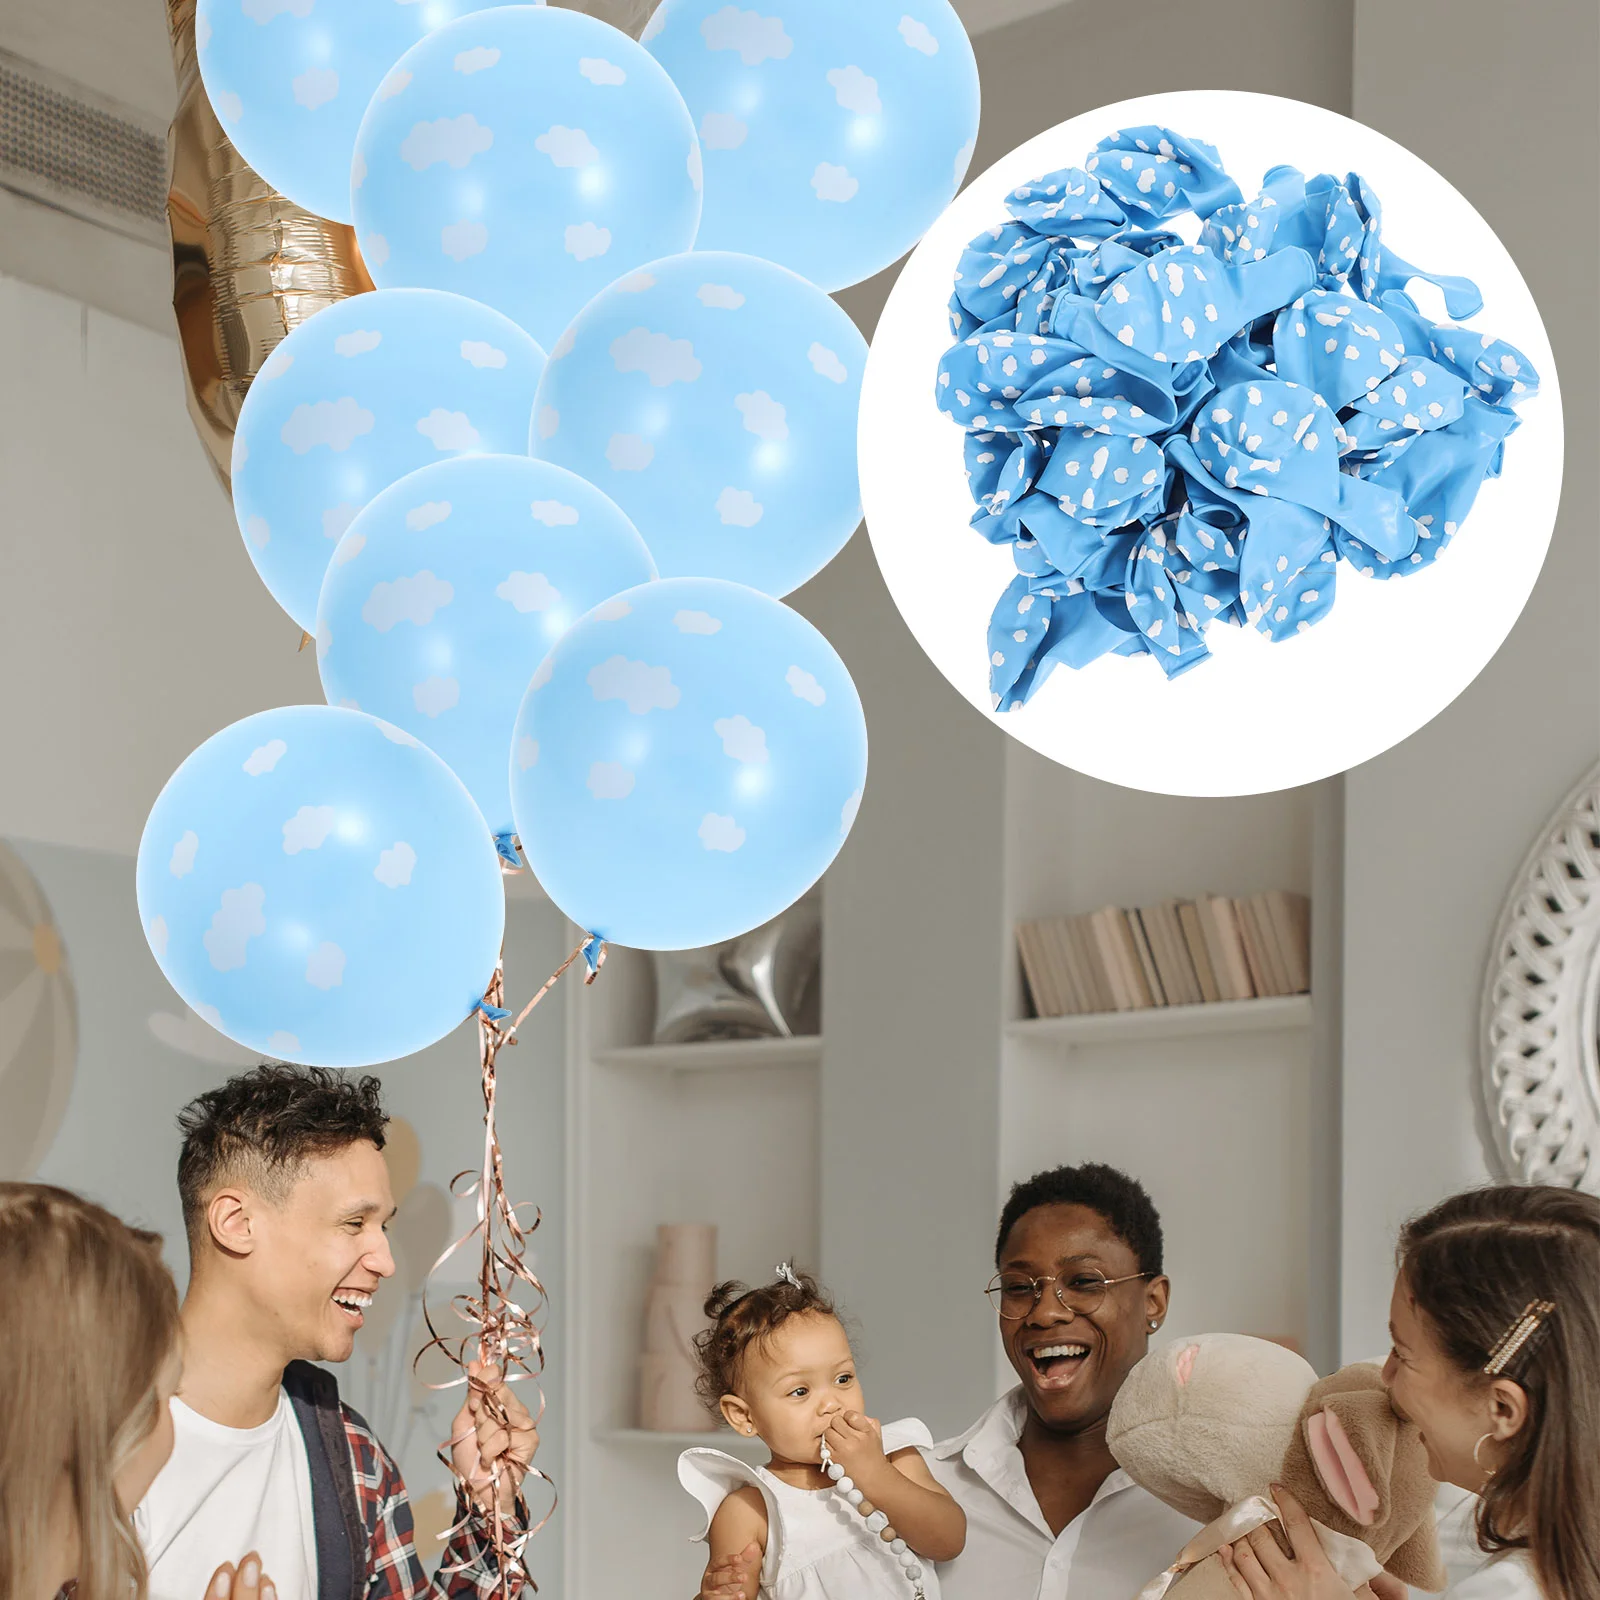 

Воздушные шары, латексное облако, искусственные облака, украшения на день рождения ребенка, голубой воздушный шар, принт, история мальчика, ...